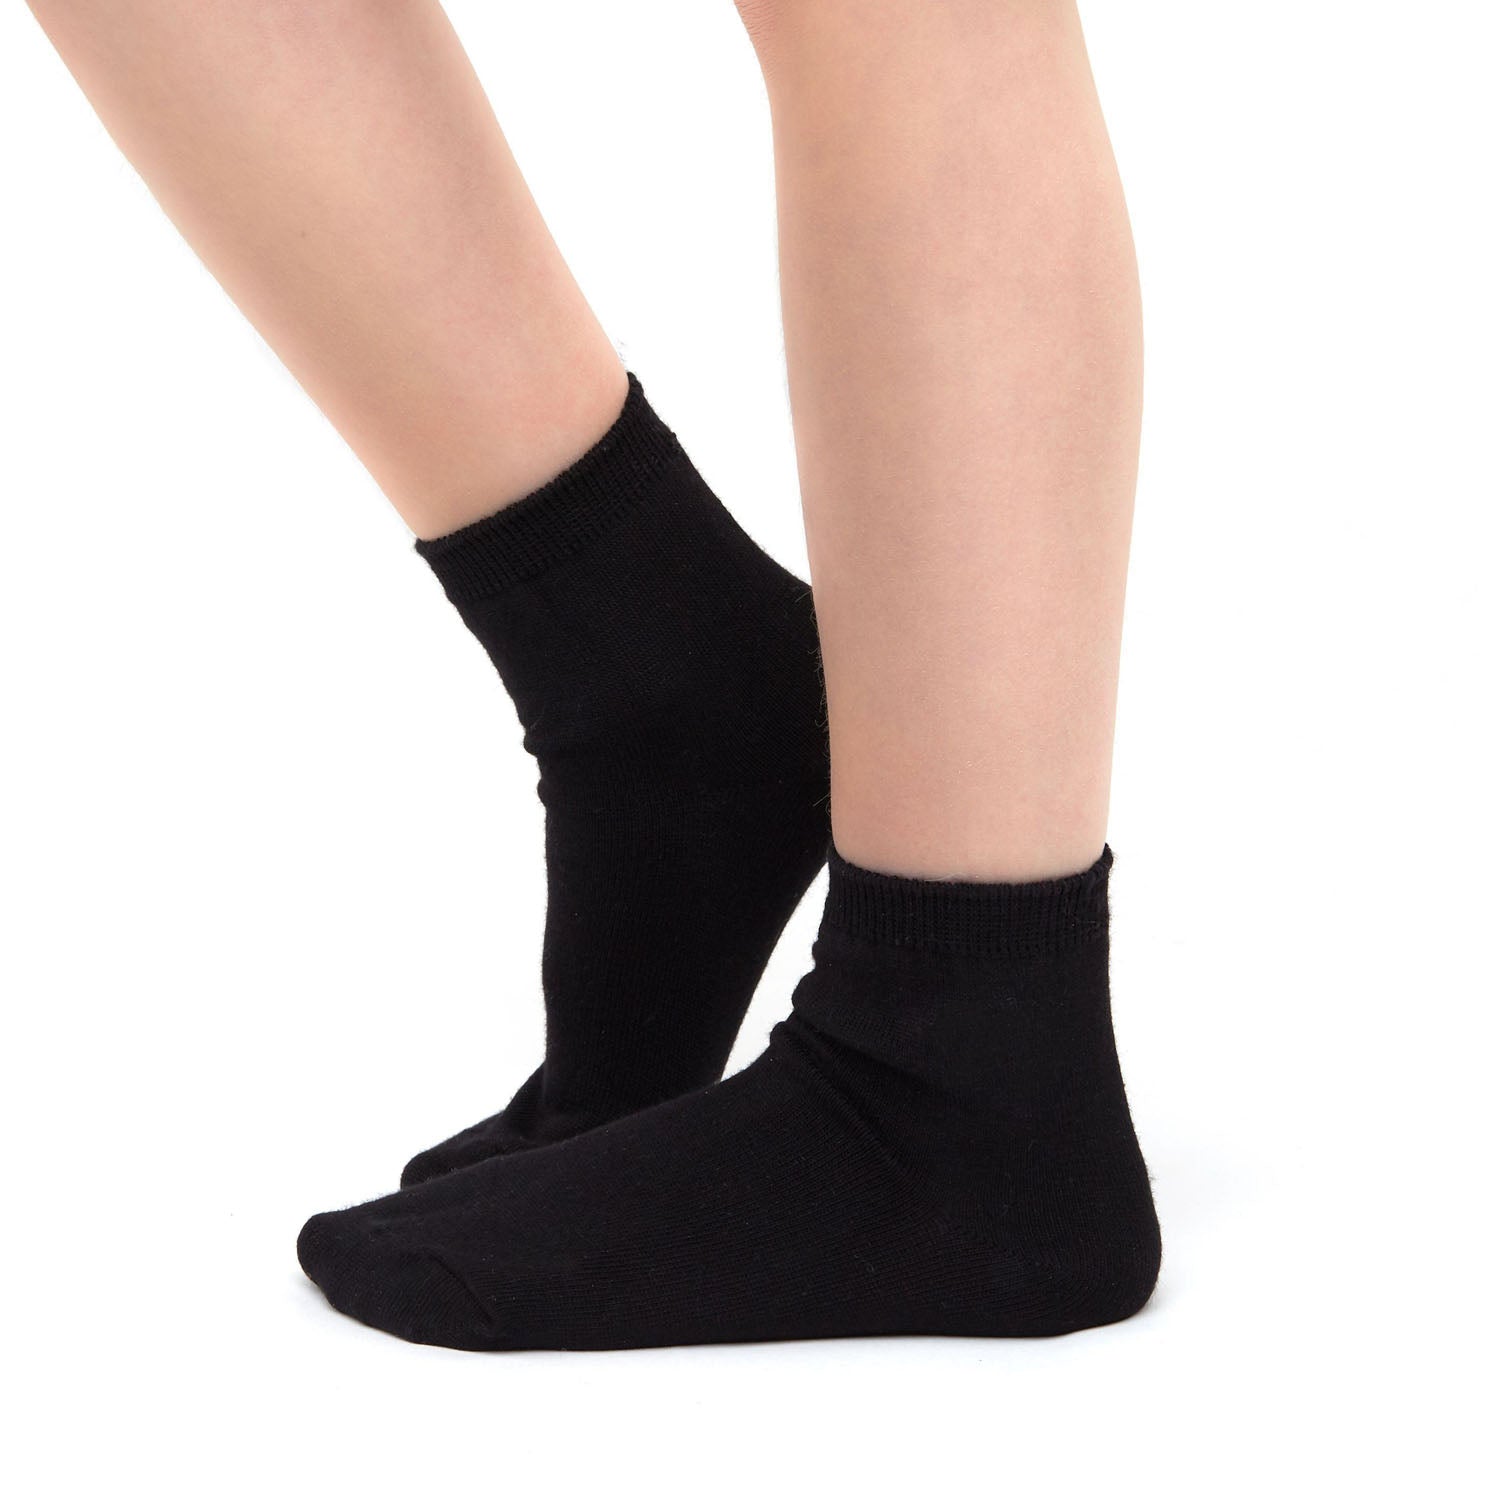 Black Cotton School Ankle Socks for Children 2 Pair